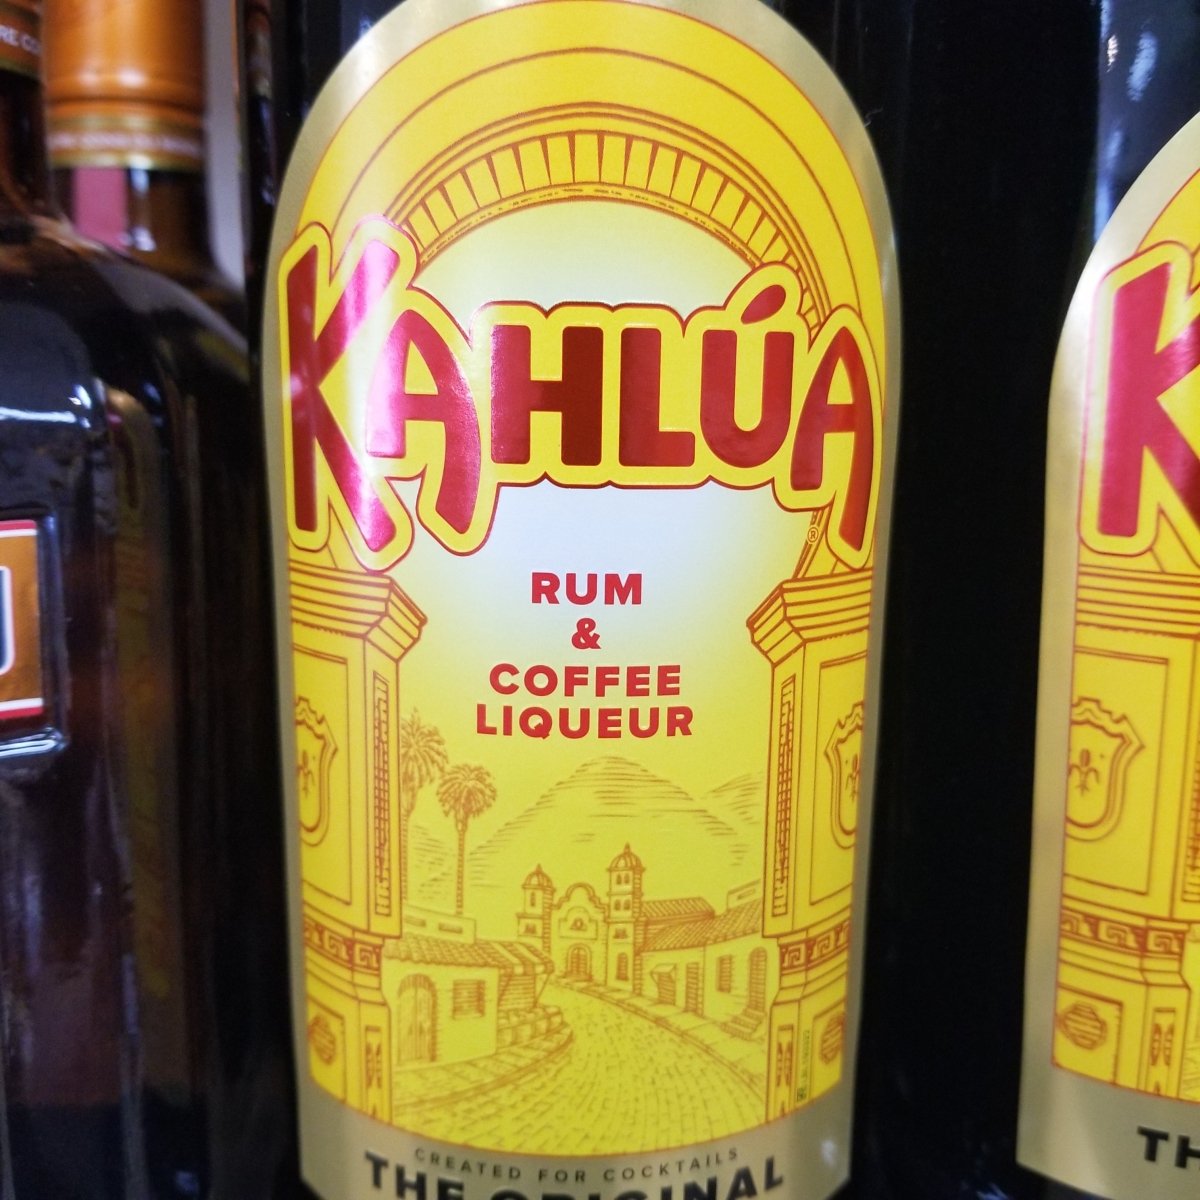 Kahlua Coffee Liqueur 750mL